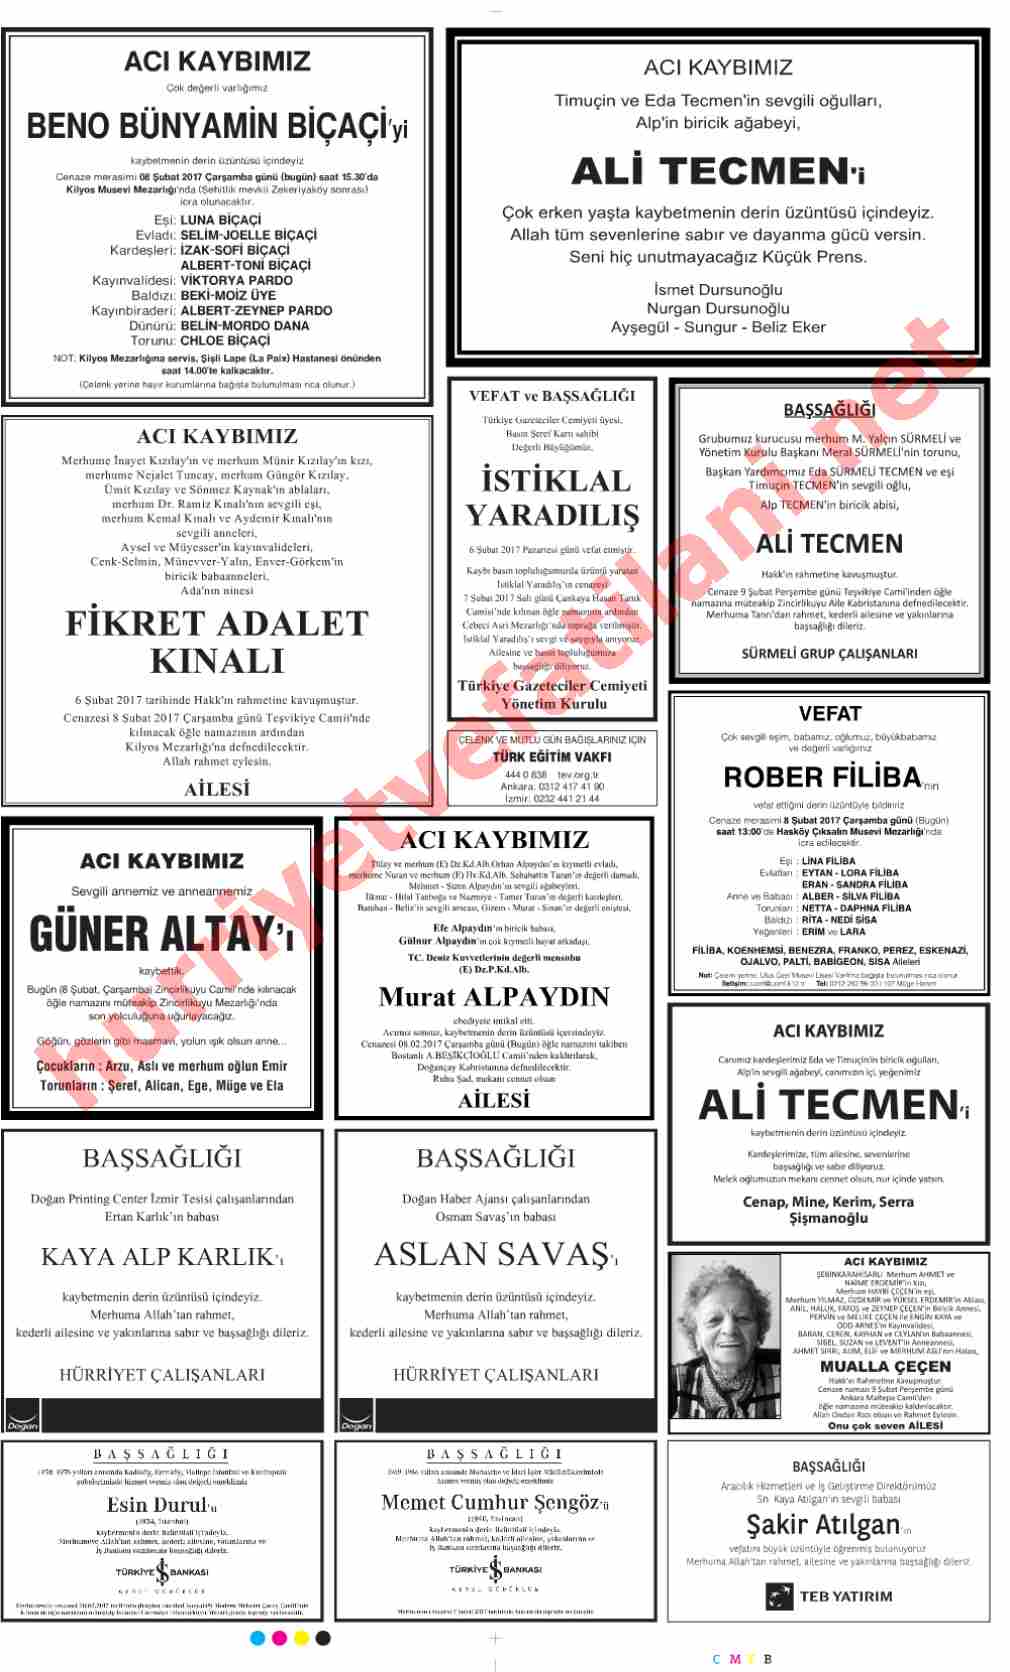 08 Şubat 2017 Hürriyet Gazetesinde Yayınlanmış Vefat İlanları Sayfası